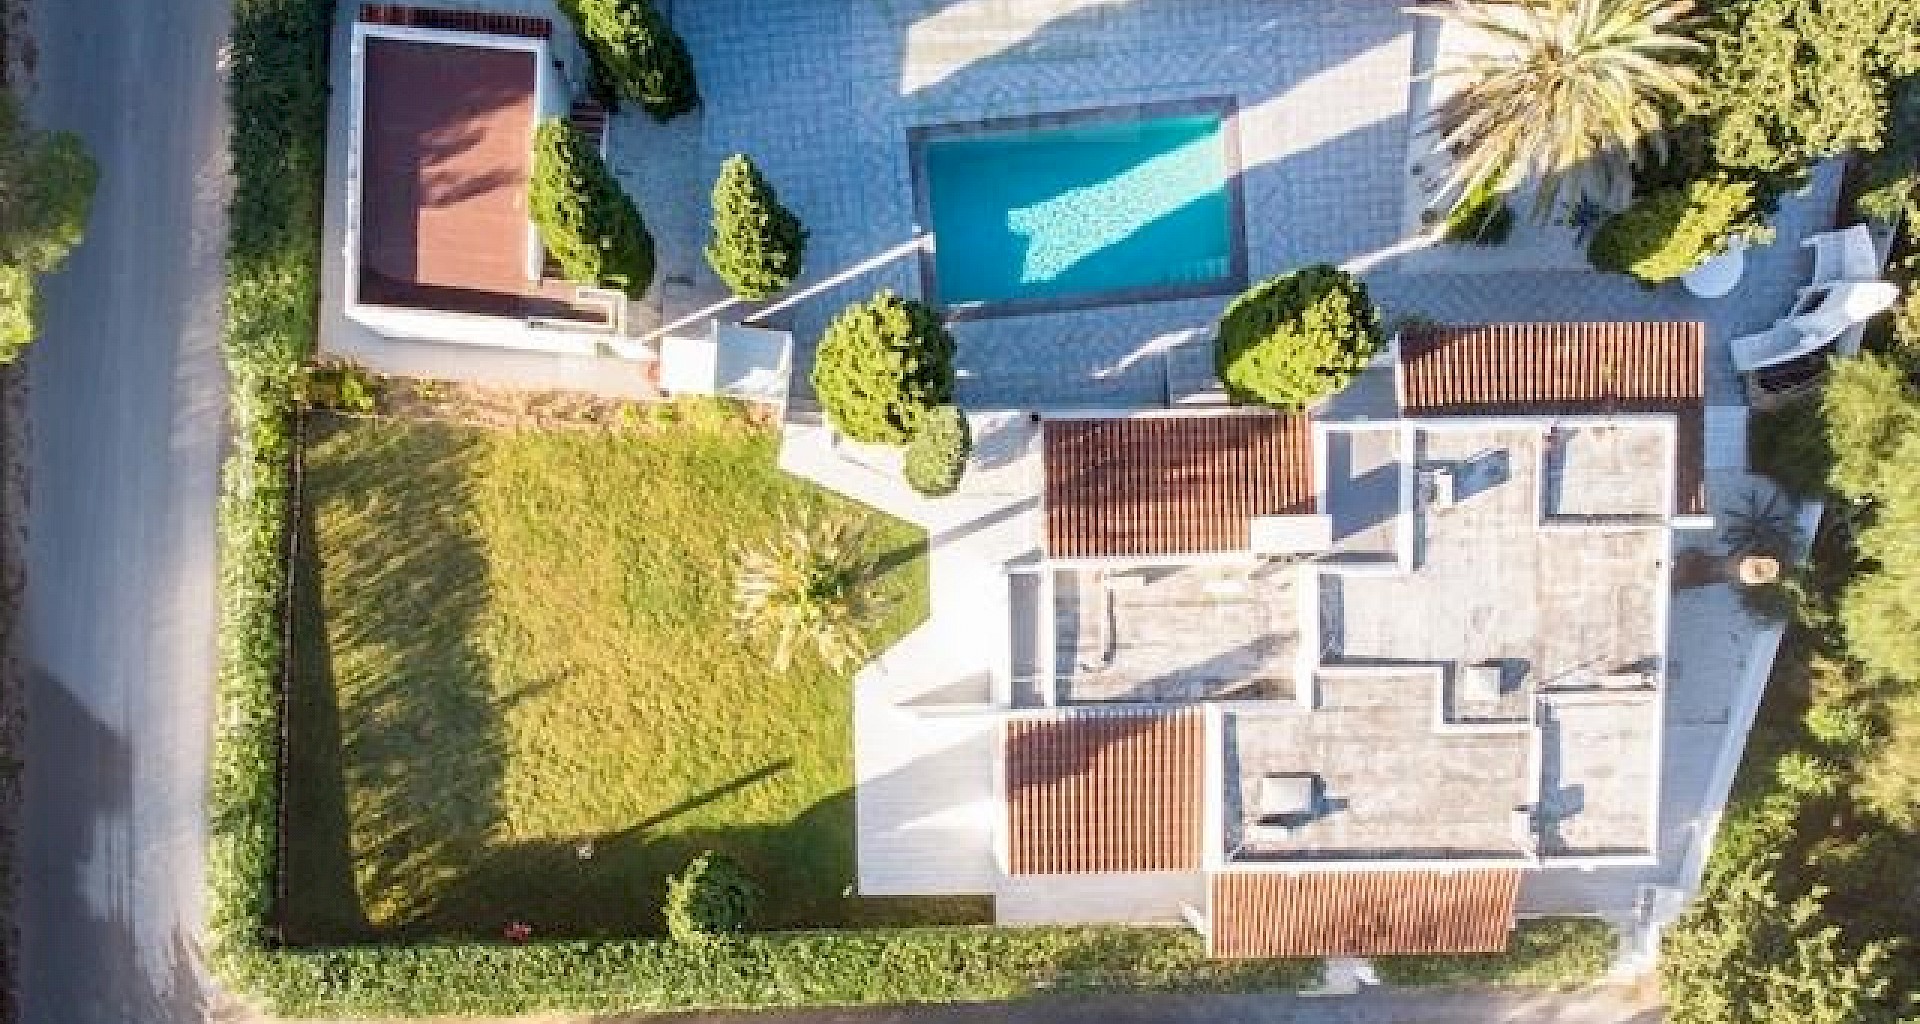 KROHN & LUEDEMANN Komplett renoviertes Haus auf Ibiza mit Pool und viel Privatsphäre Benimussa (1)